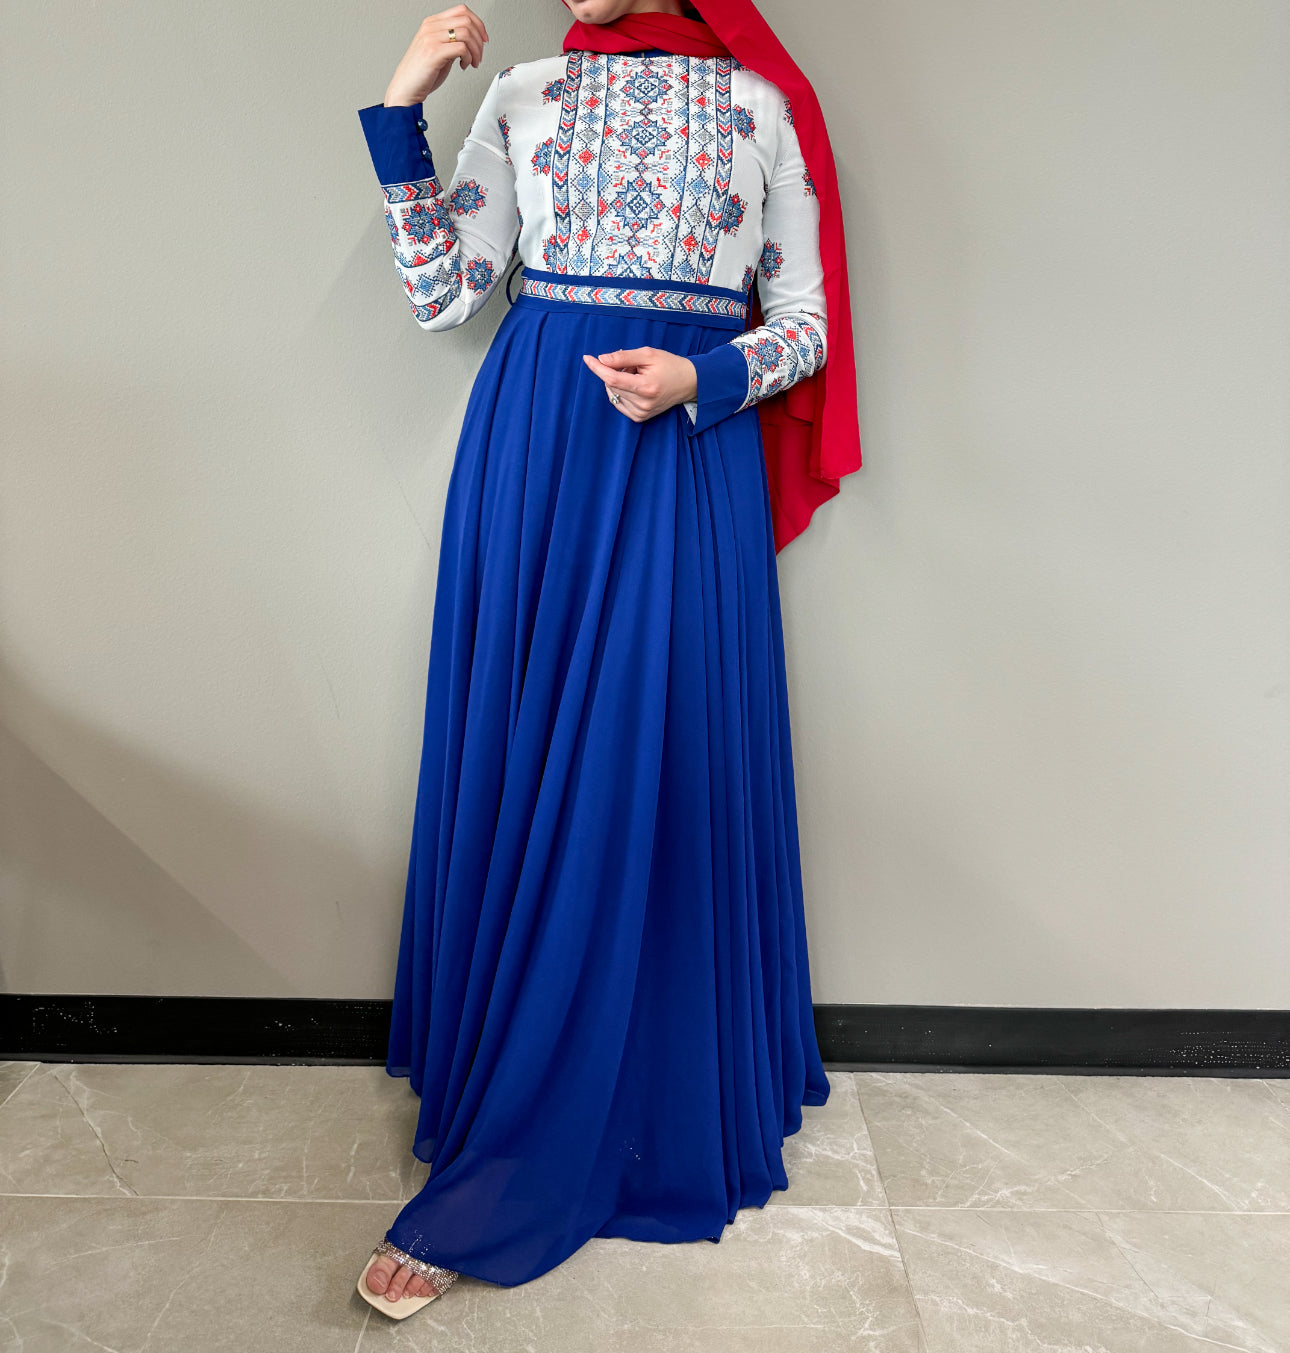 Embroidered Chiffon Dress - Royal Blue